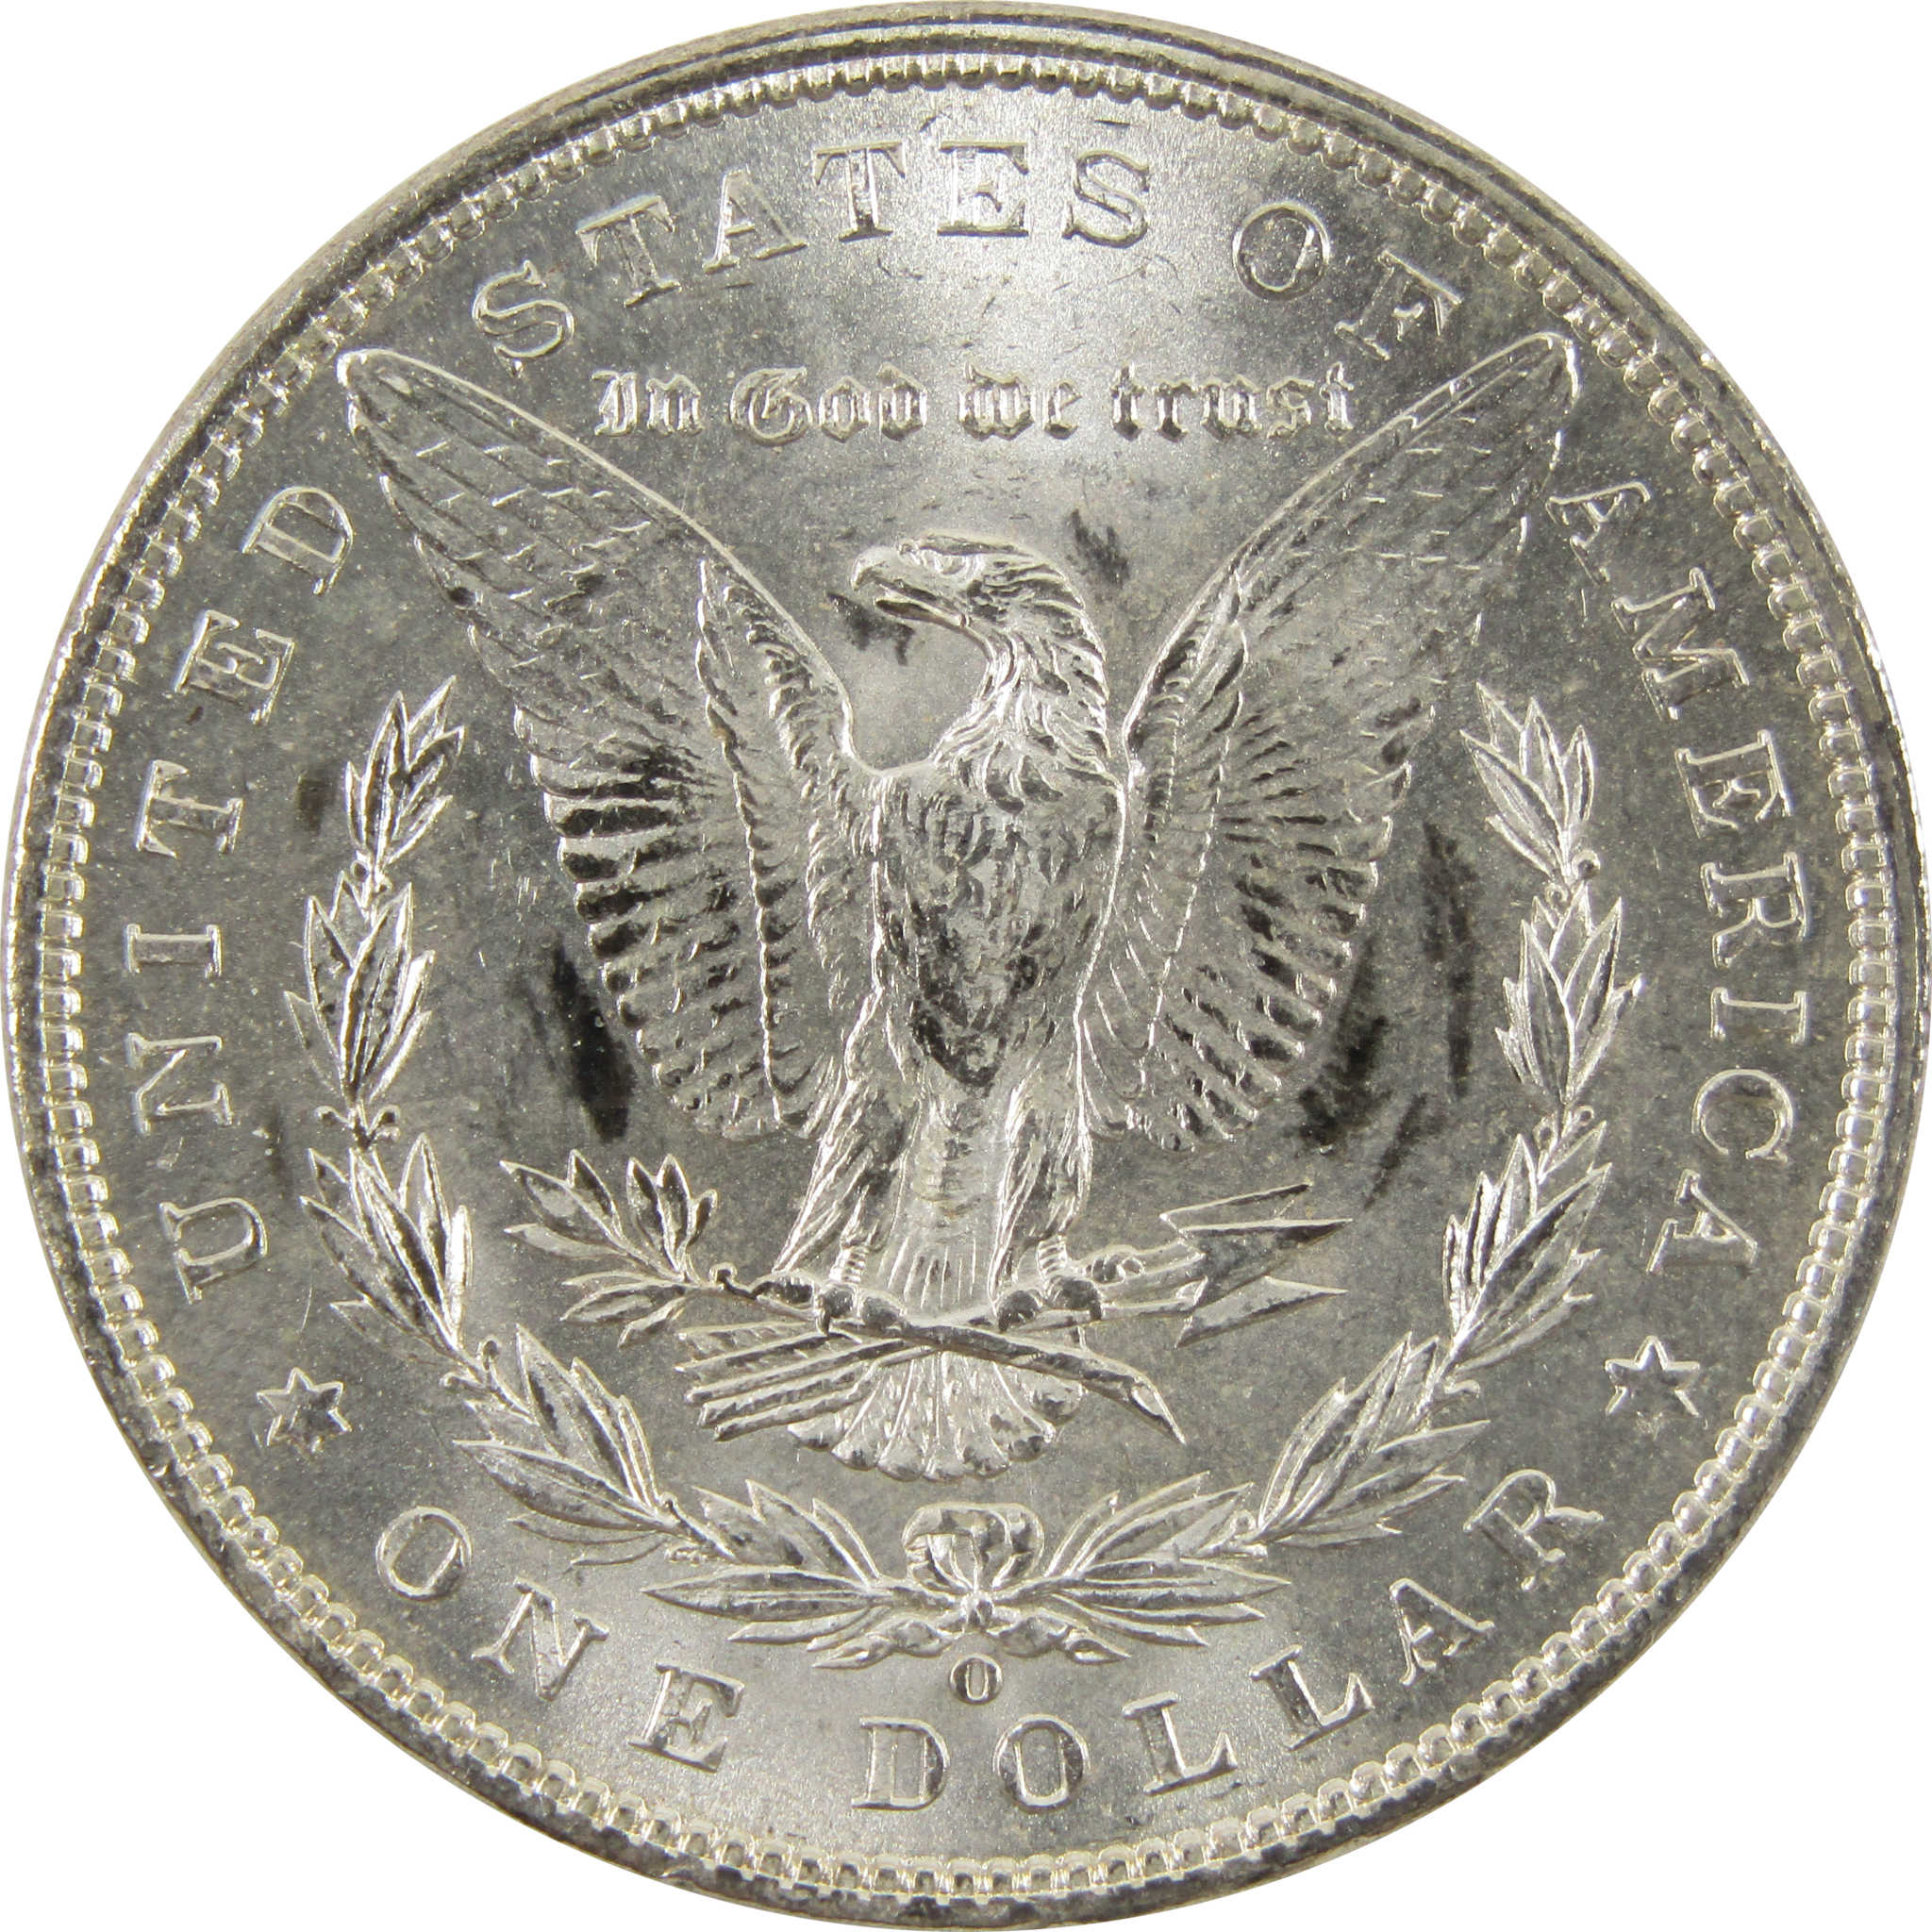 1901 O Morgan Dollar BU Uncirculated 90% Silver $1 Coin SKU:I10476 - Morgan coin - Morgan silver dollar - Morgan silver dollar for sale - Profile Coins &amp; Collectibles